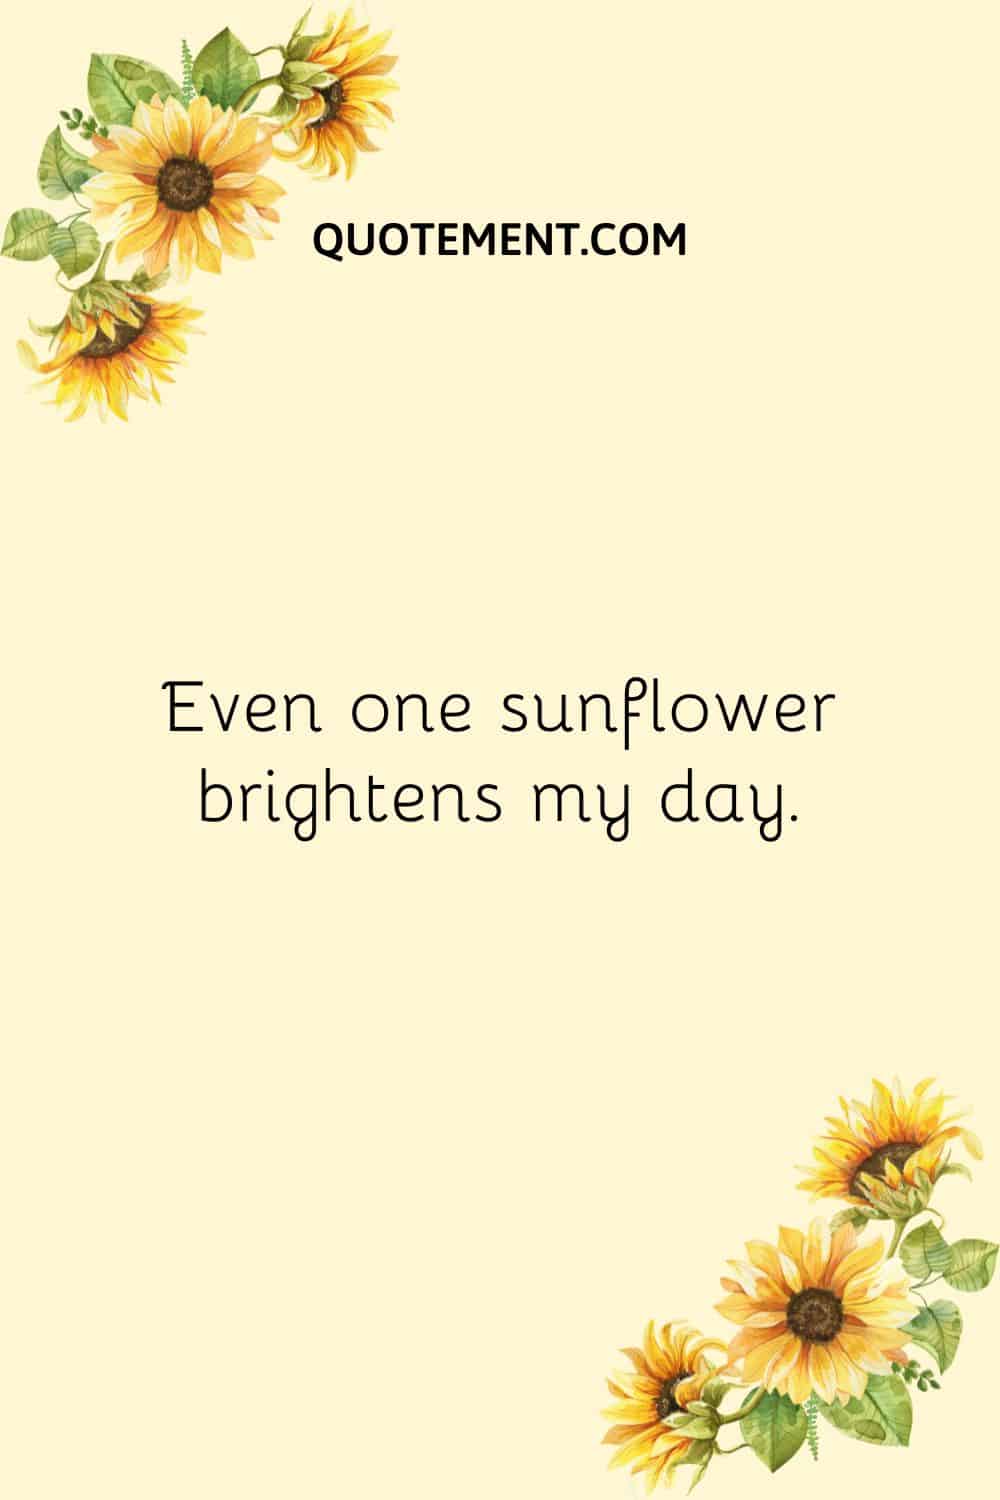 Even one sunflower brightens my day.